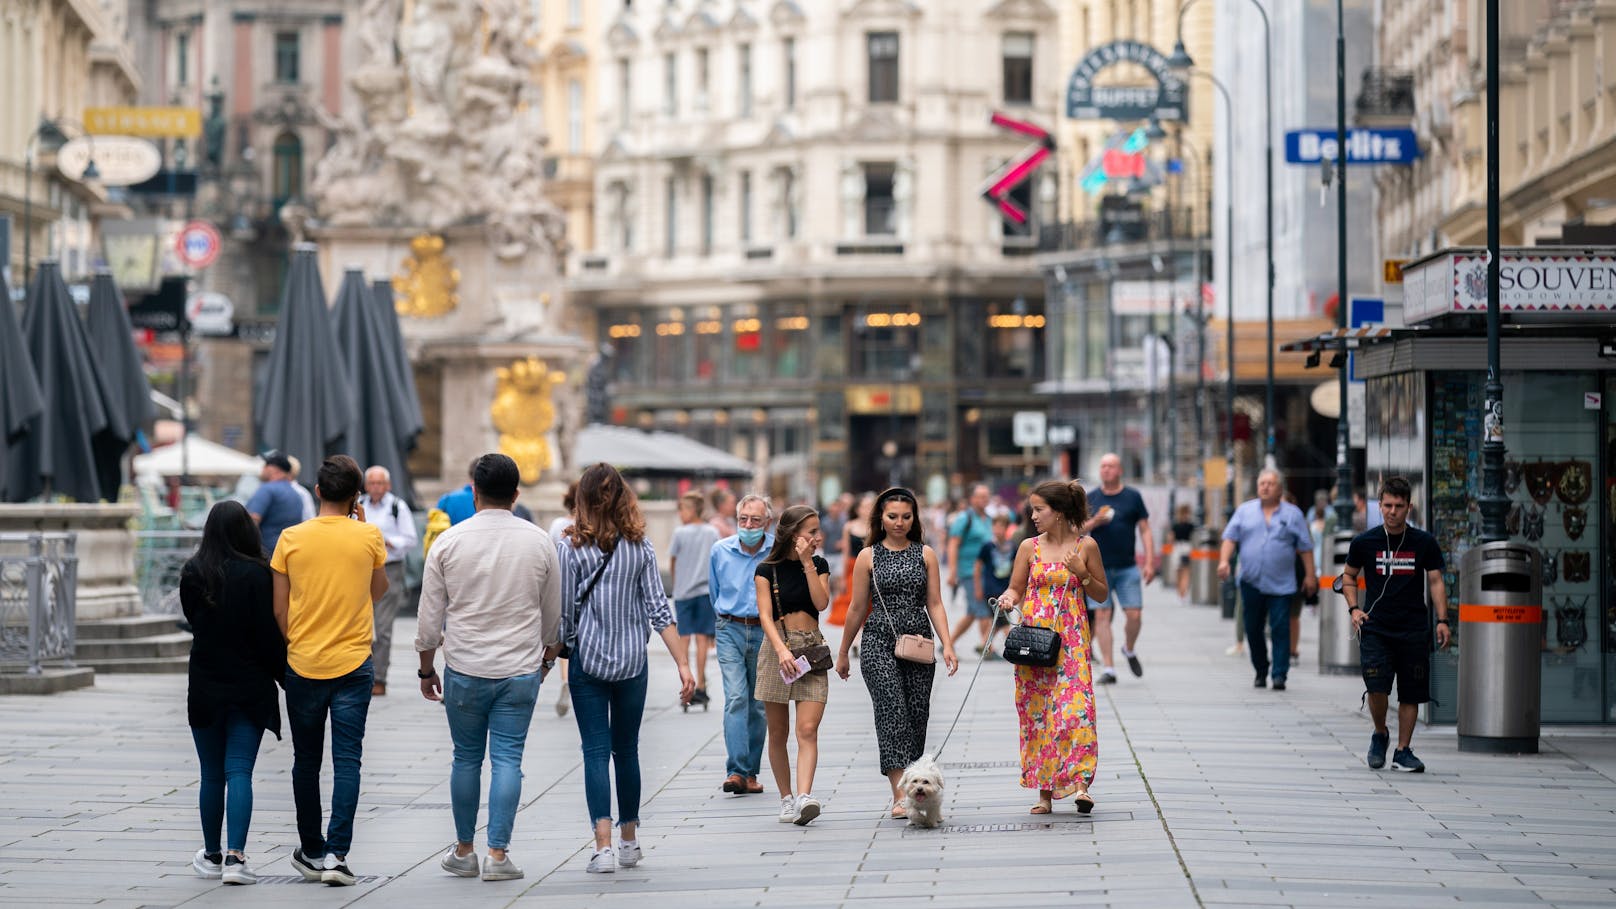 Wien ist beliebt bei Touristen, das zeigen aktuelle Nennungen in internationalen Medien.